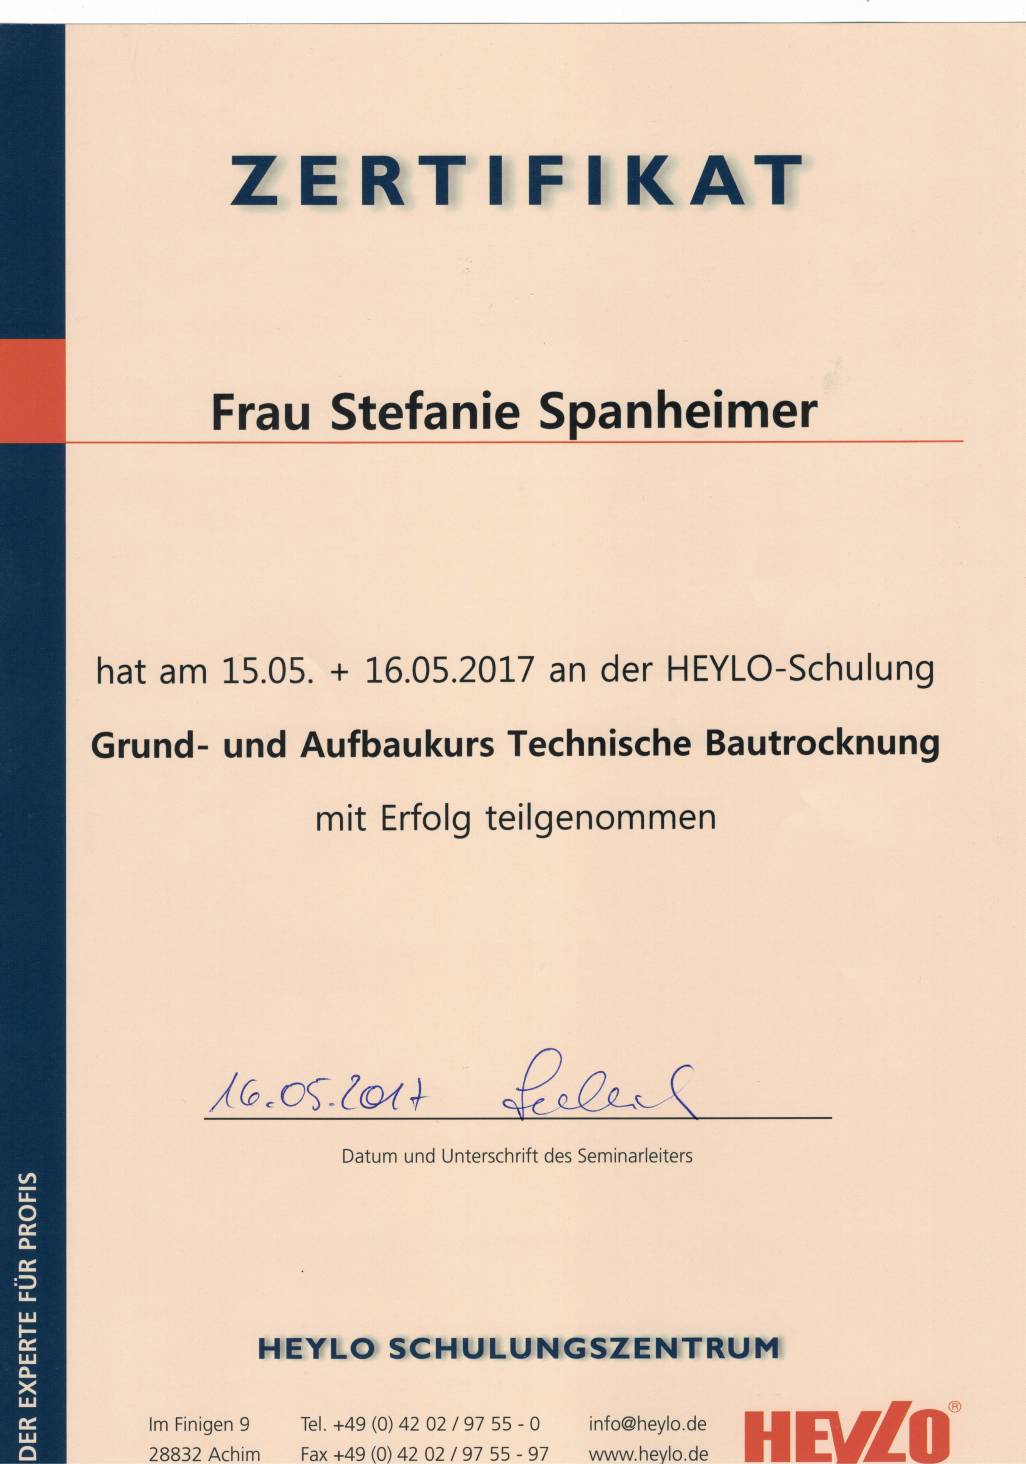 Zertifikat Stefanie Spanheimer Grund- und Aufbaukurs Technische Bautrocknung